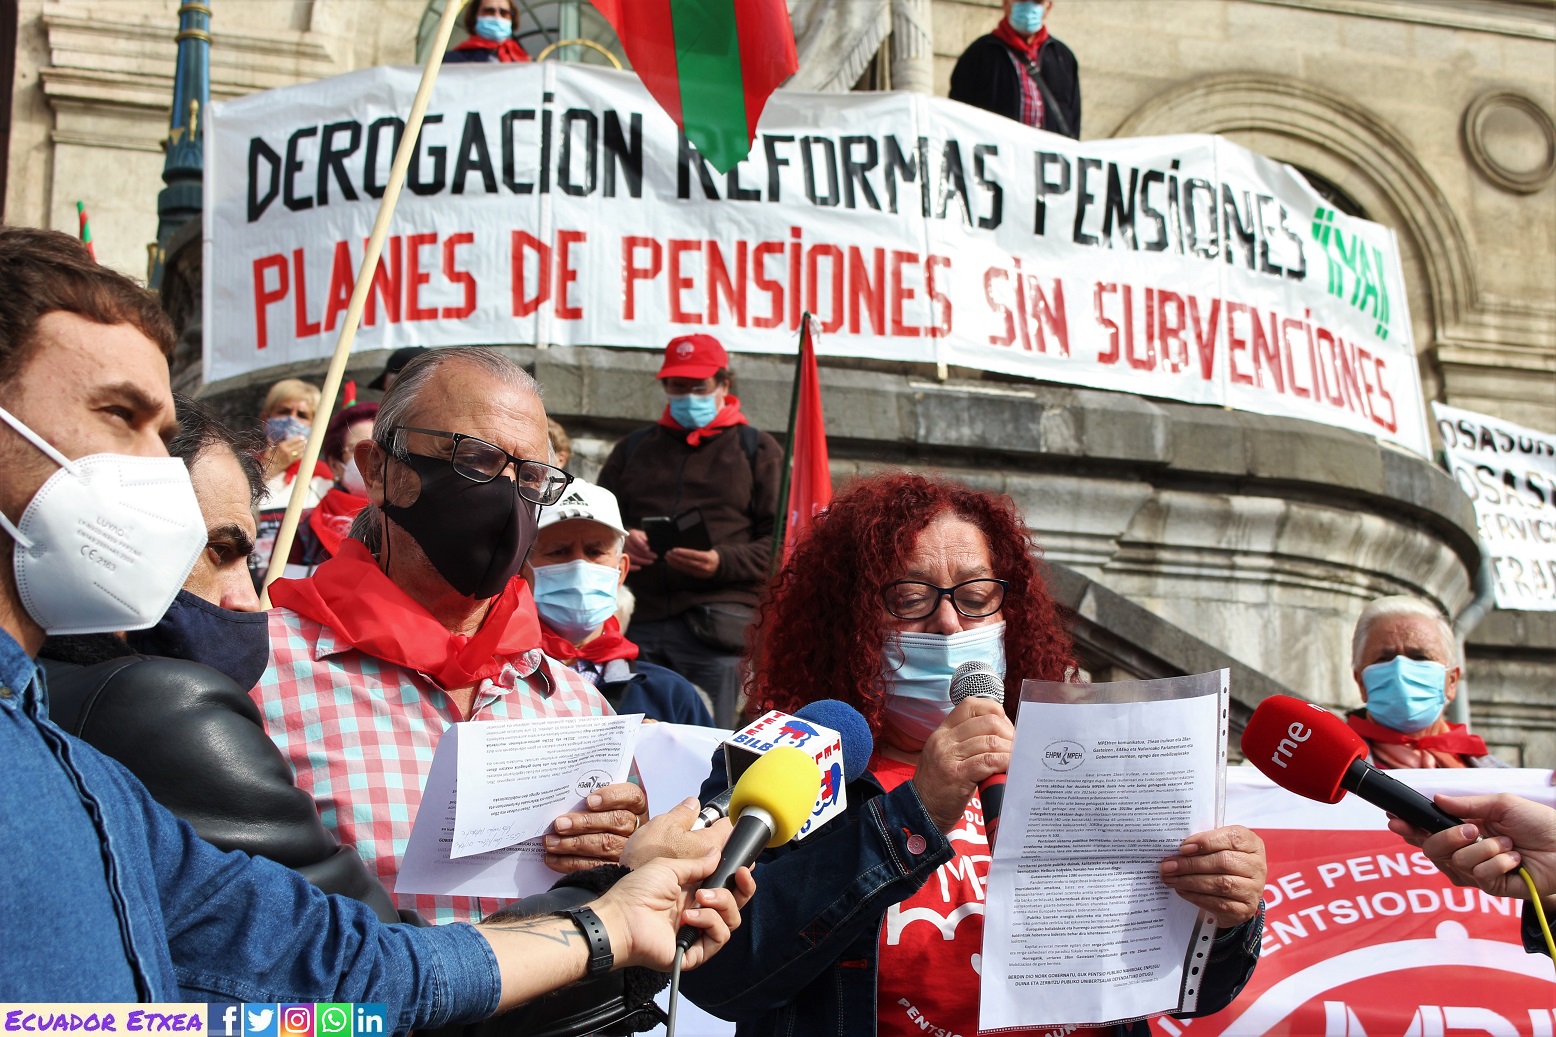 Pensionistas-vascos-euskalherria-bilbao-pensiones-dignas-reivindicaciones-parlamentos-Gasteiz-Navarra